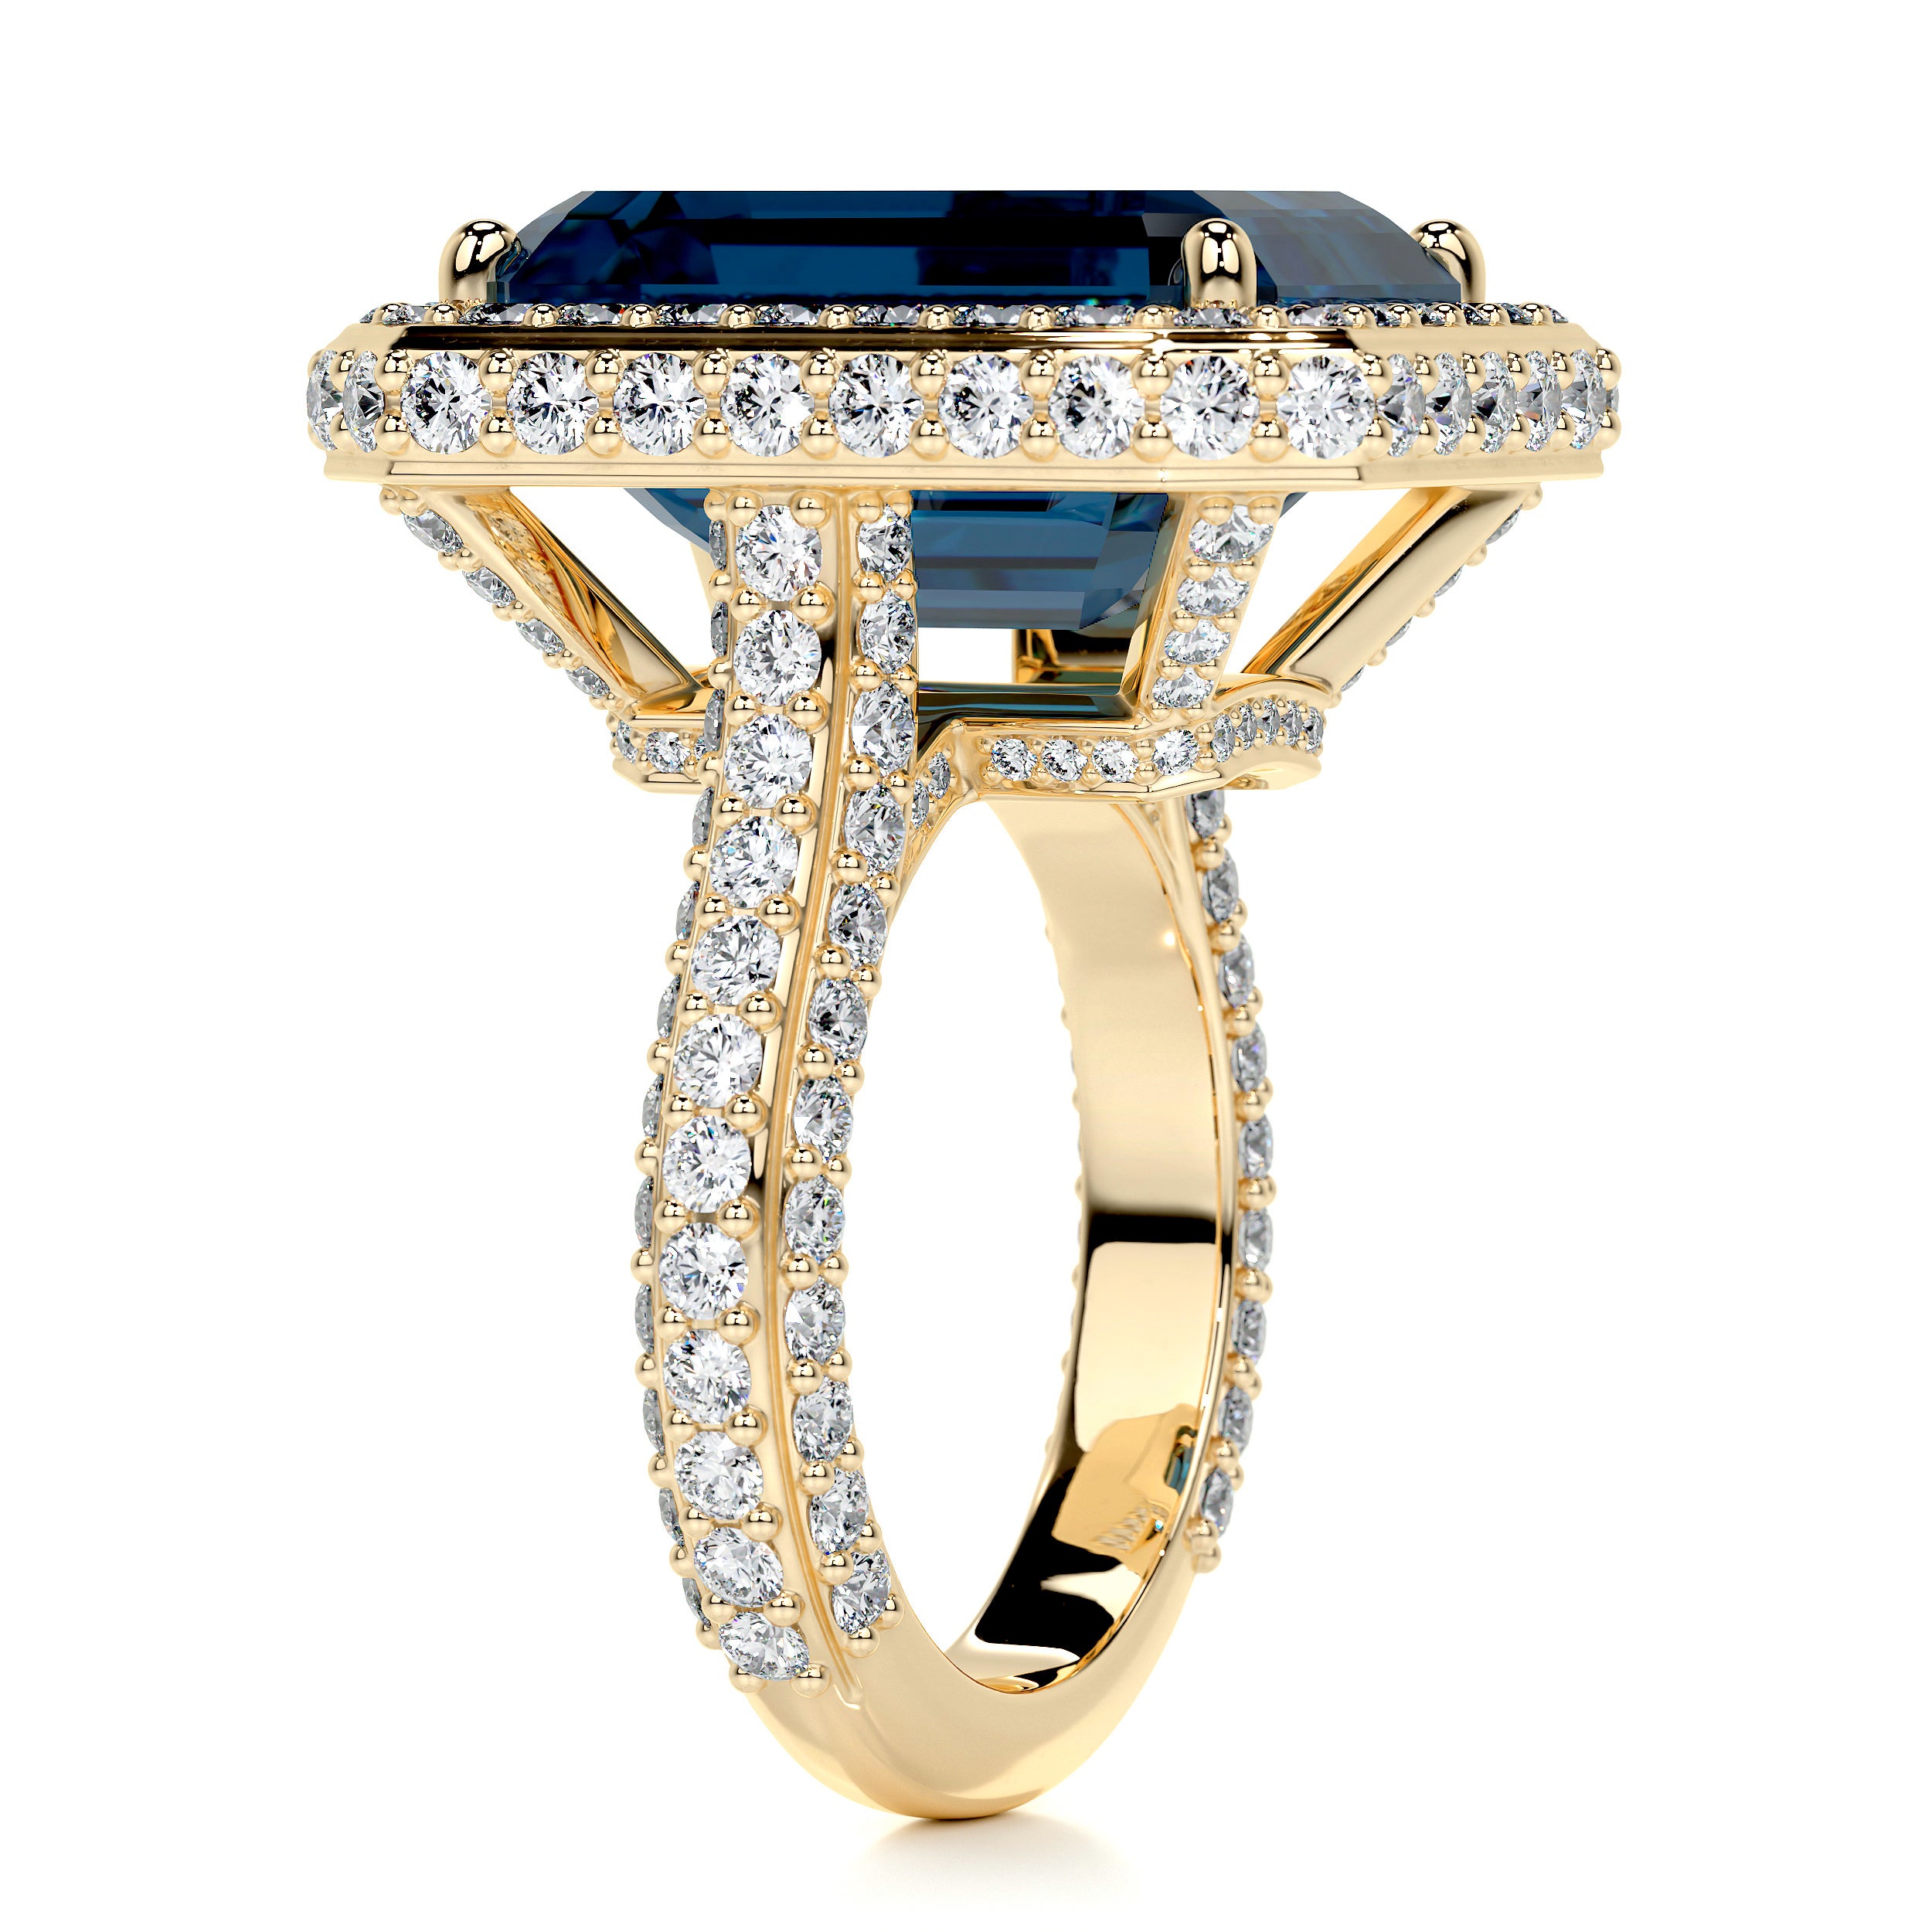 Mackenzie Gemstone & Diamonds Ring   (12 Carat) -18K Yellow Gold